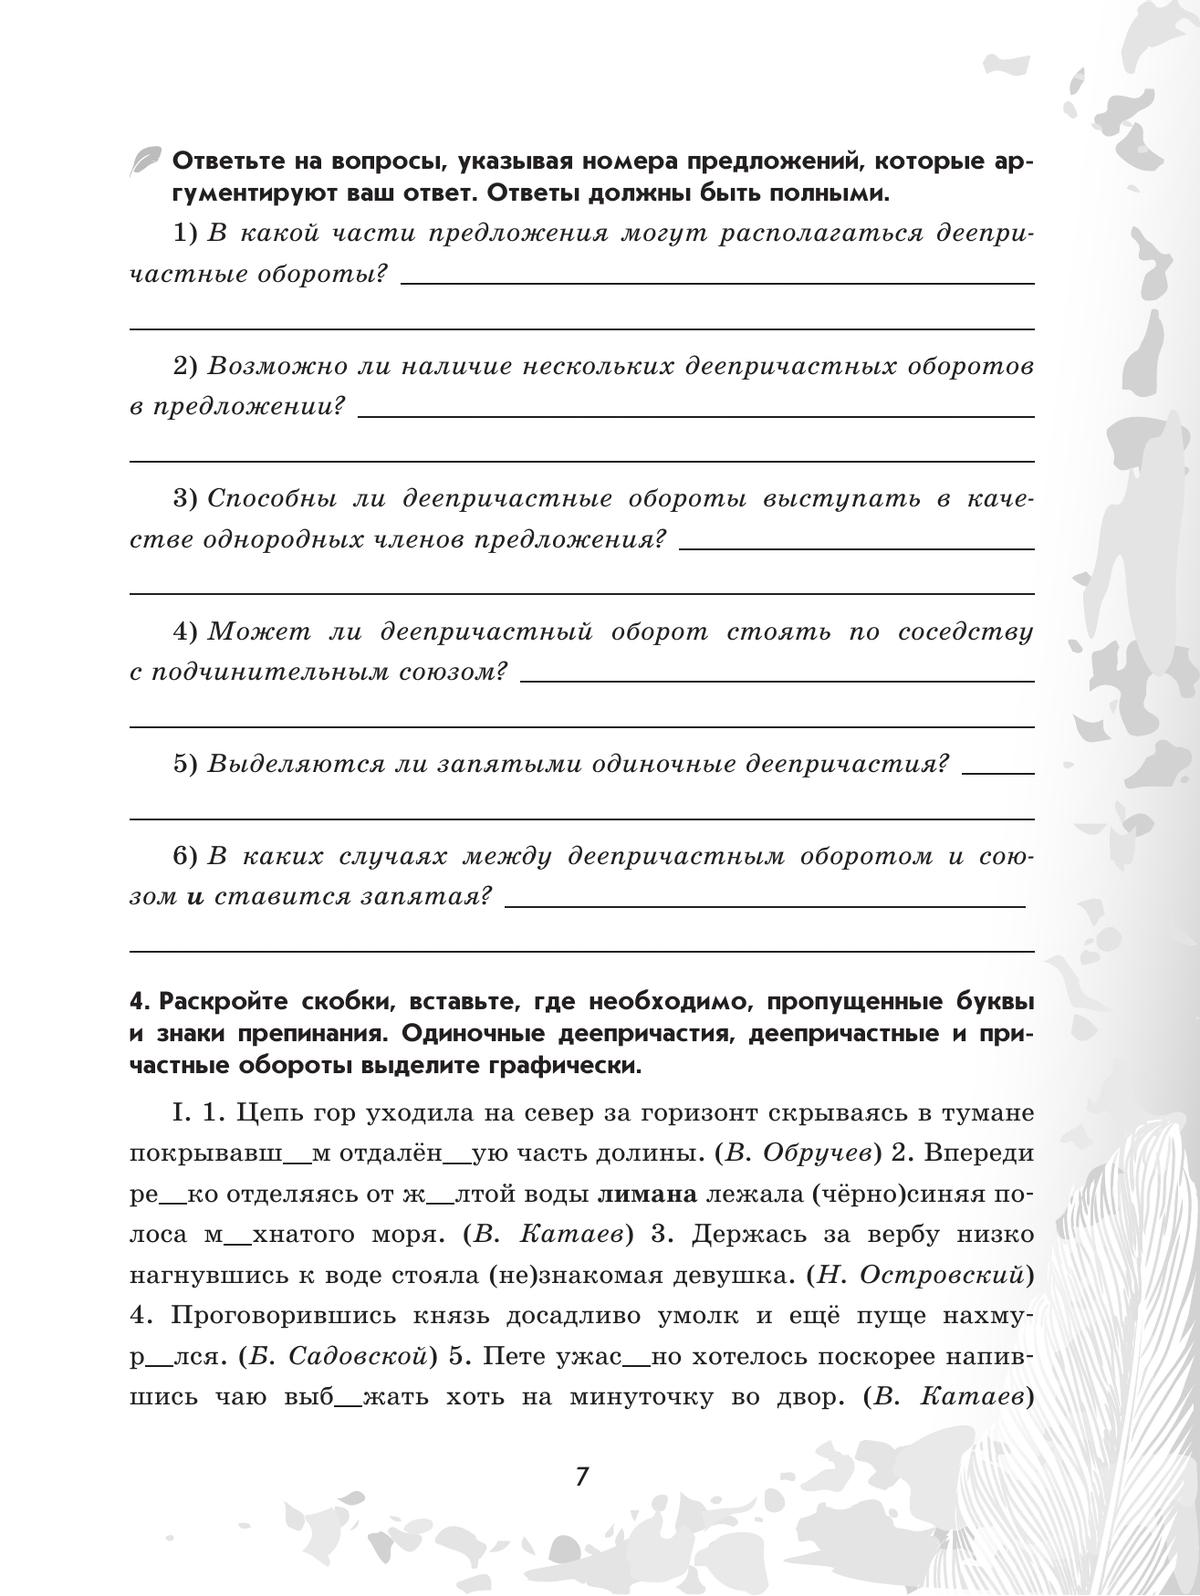 Русский язык. 7 класс. Рабочая тетрадь. Часть 2 5